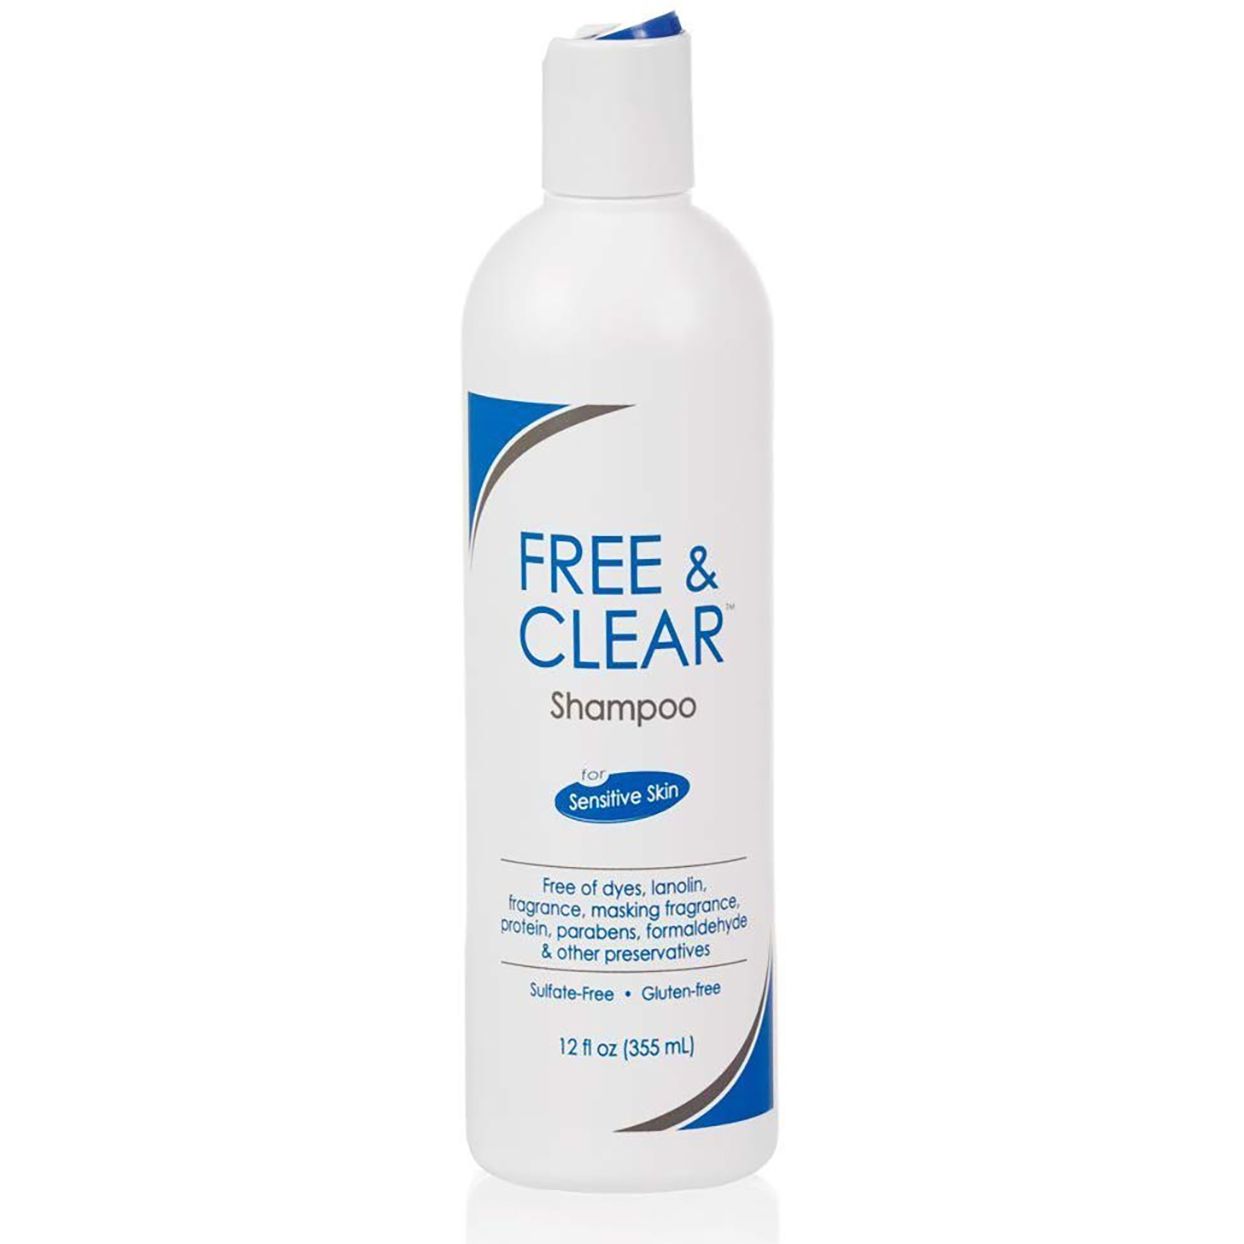 Free & Clear dandruff shampoo